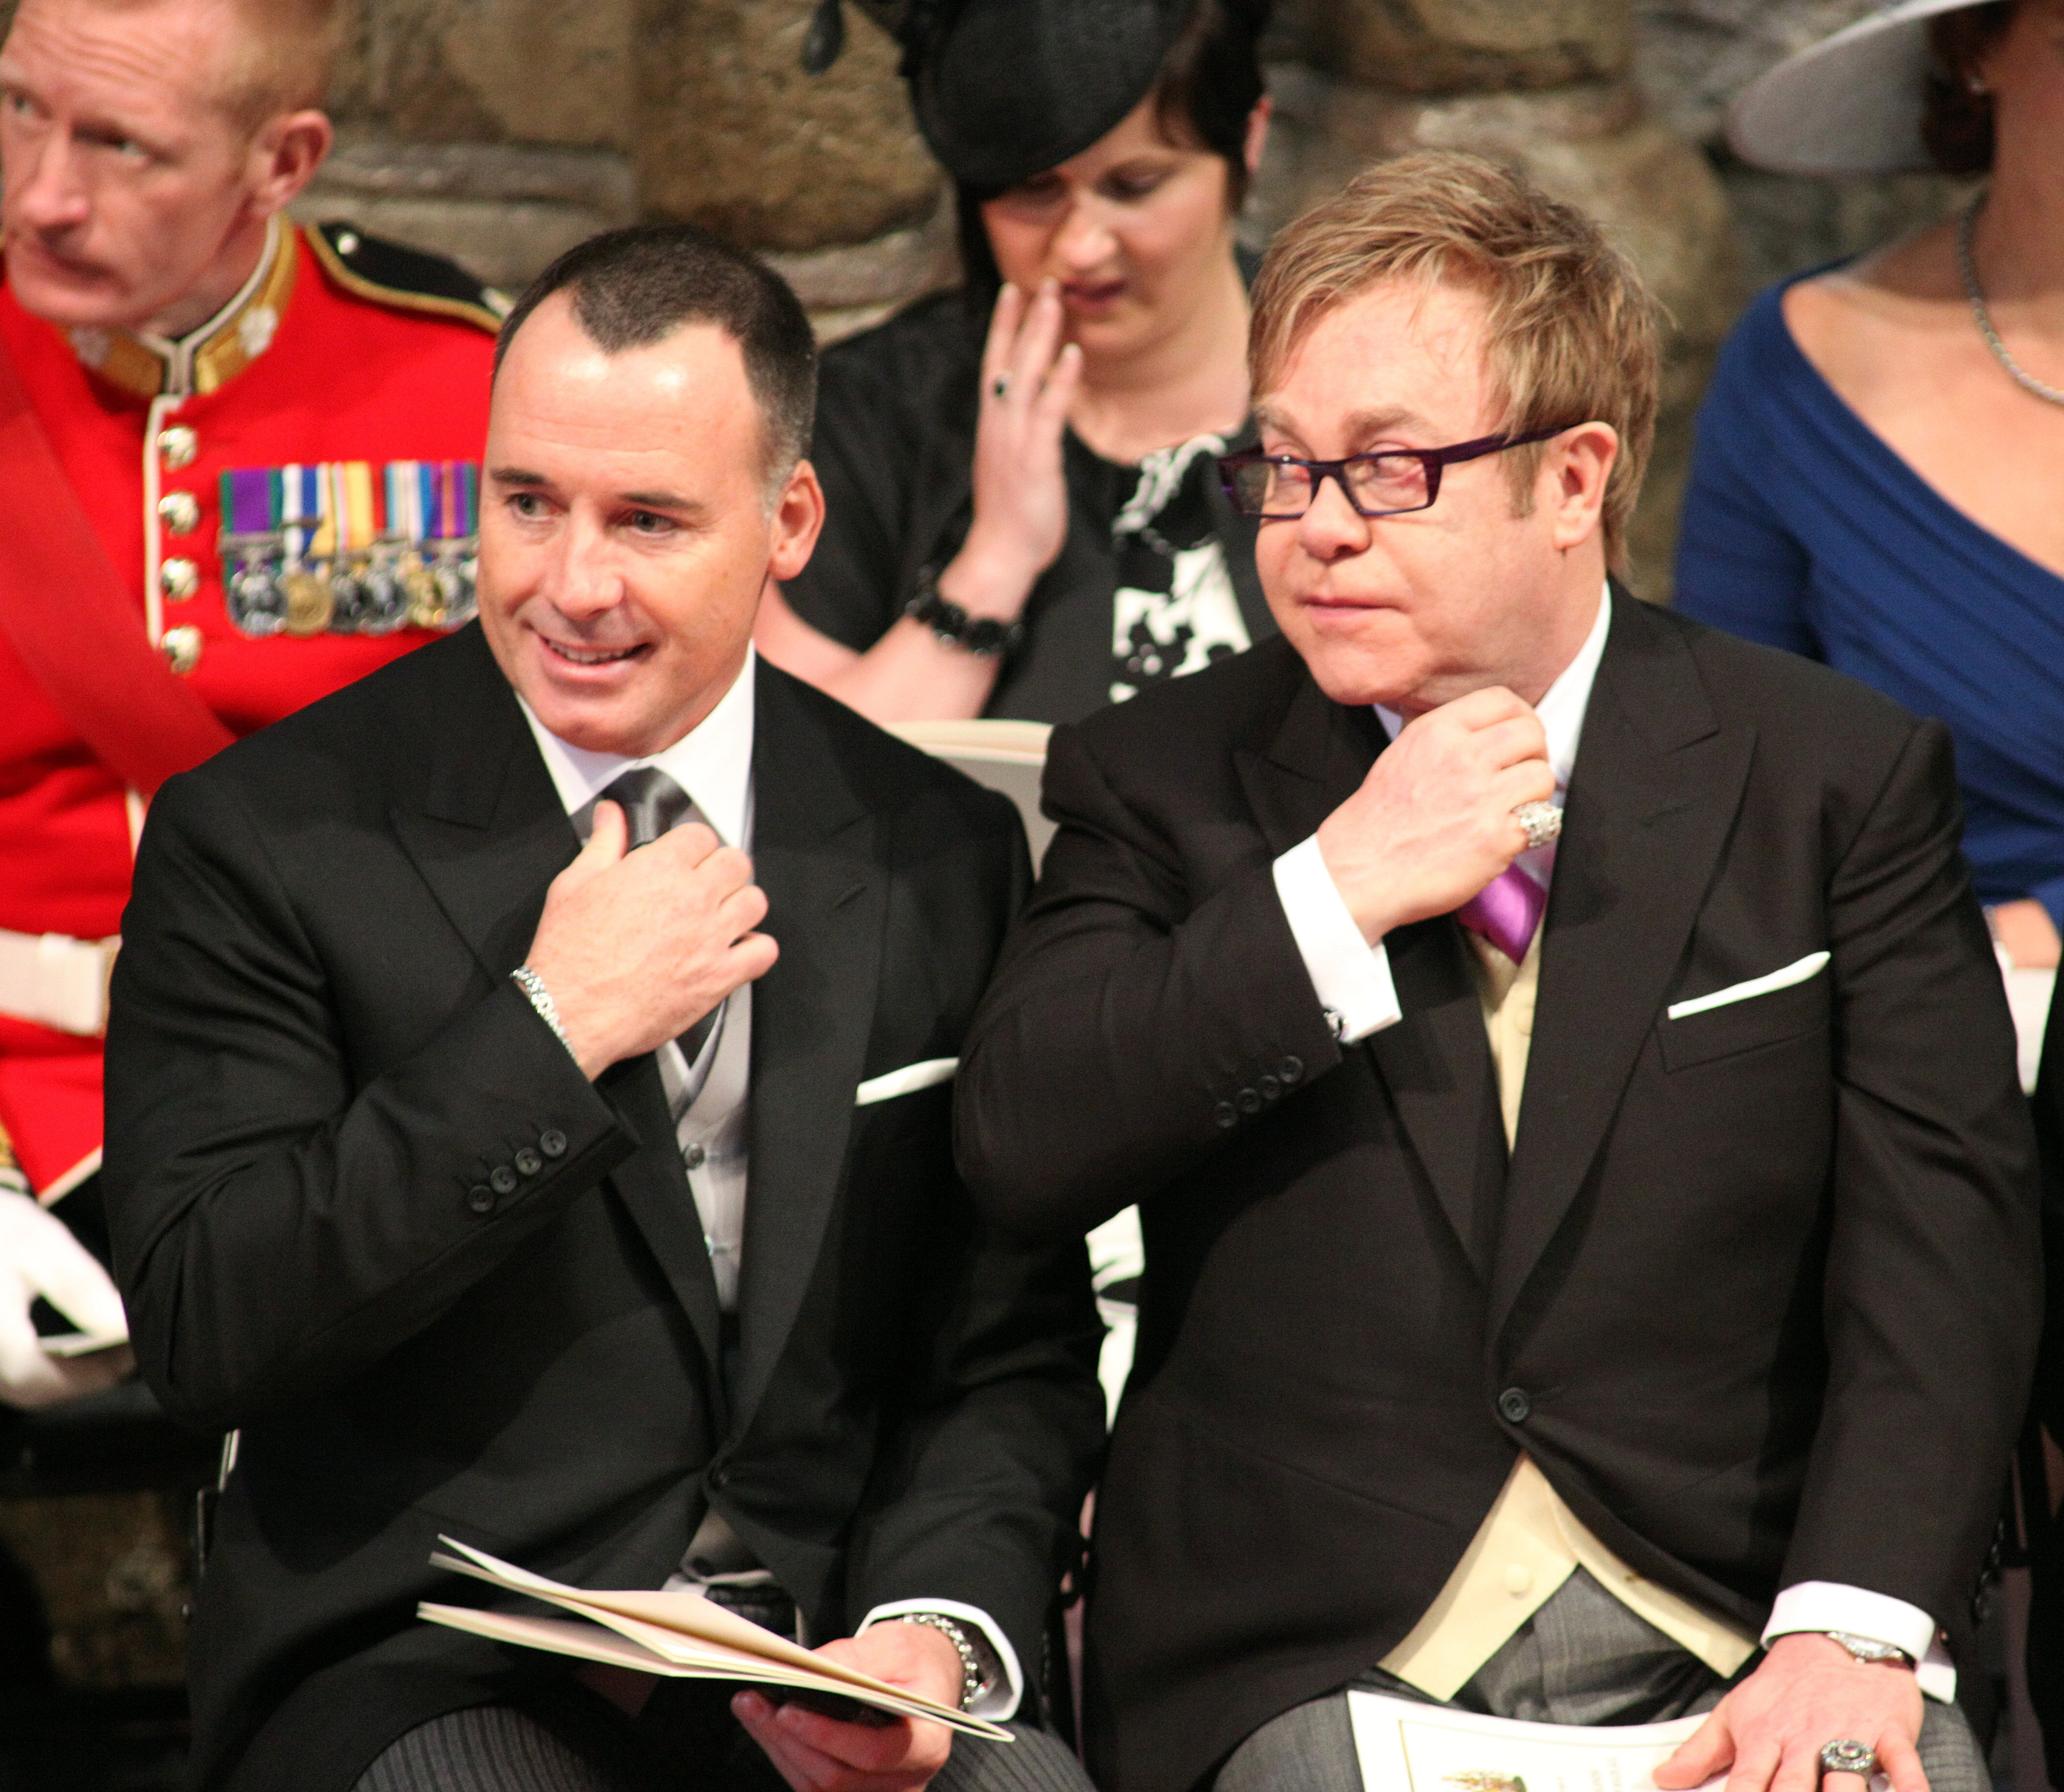 29 aprile 2011. Sir Elton John e il compagno David Furnish partecipano alle nozze tra il principe William e Kate Middleton nell'abbazia di Westminster a Londra